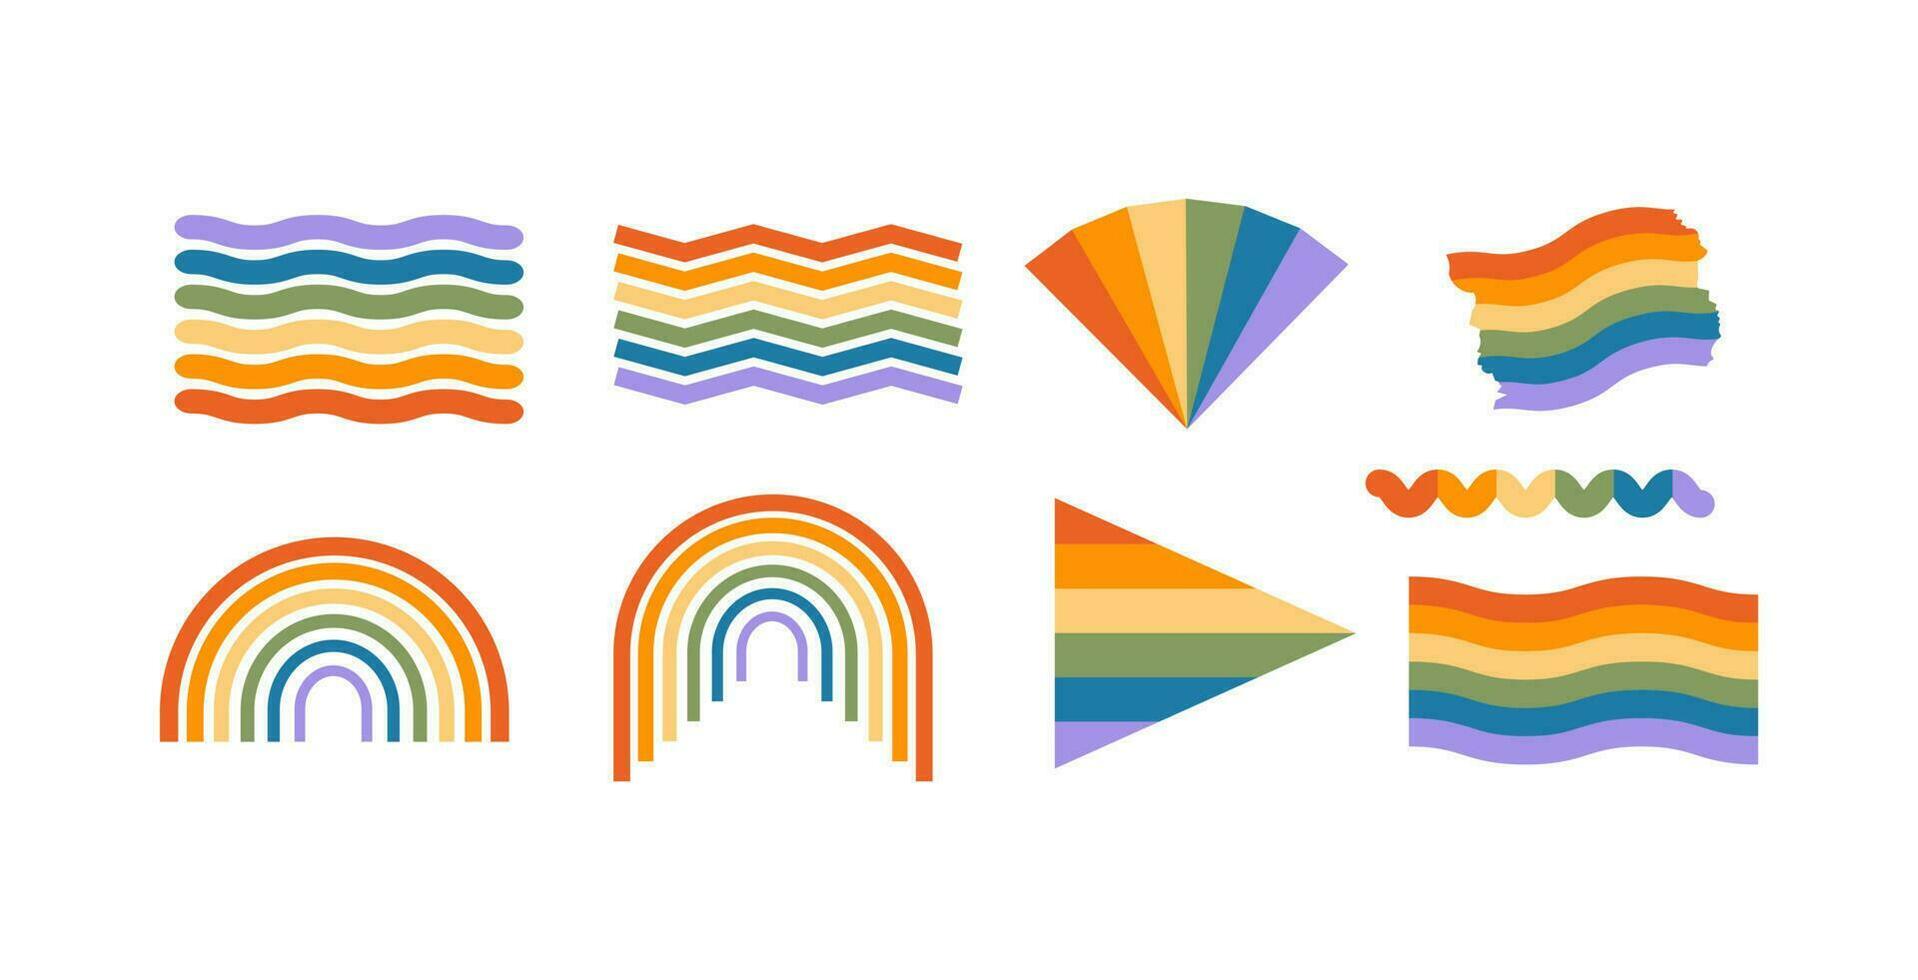 kleurrijk lgbtq creatief element set. verzameling van lgbt regenboog symbool voor trots maand vector illustratie